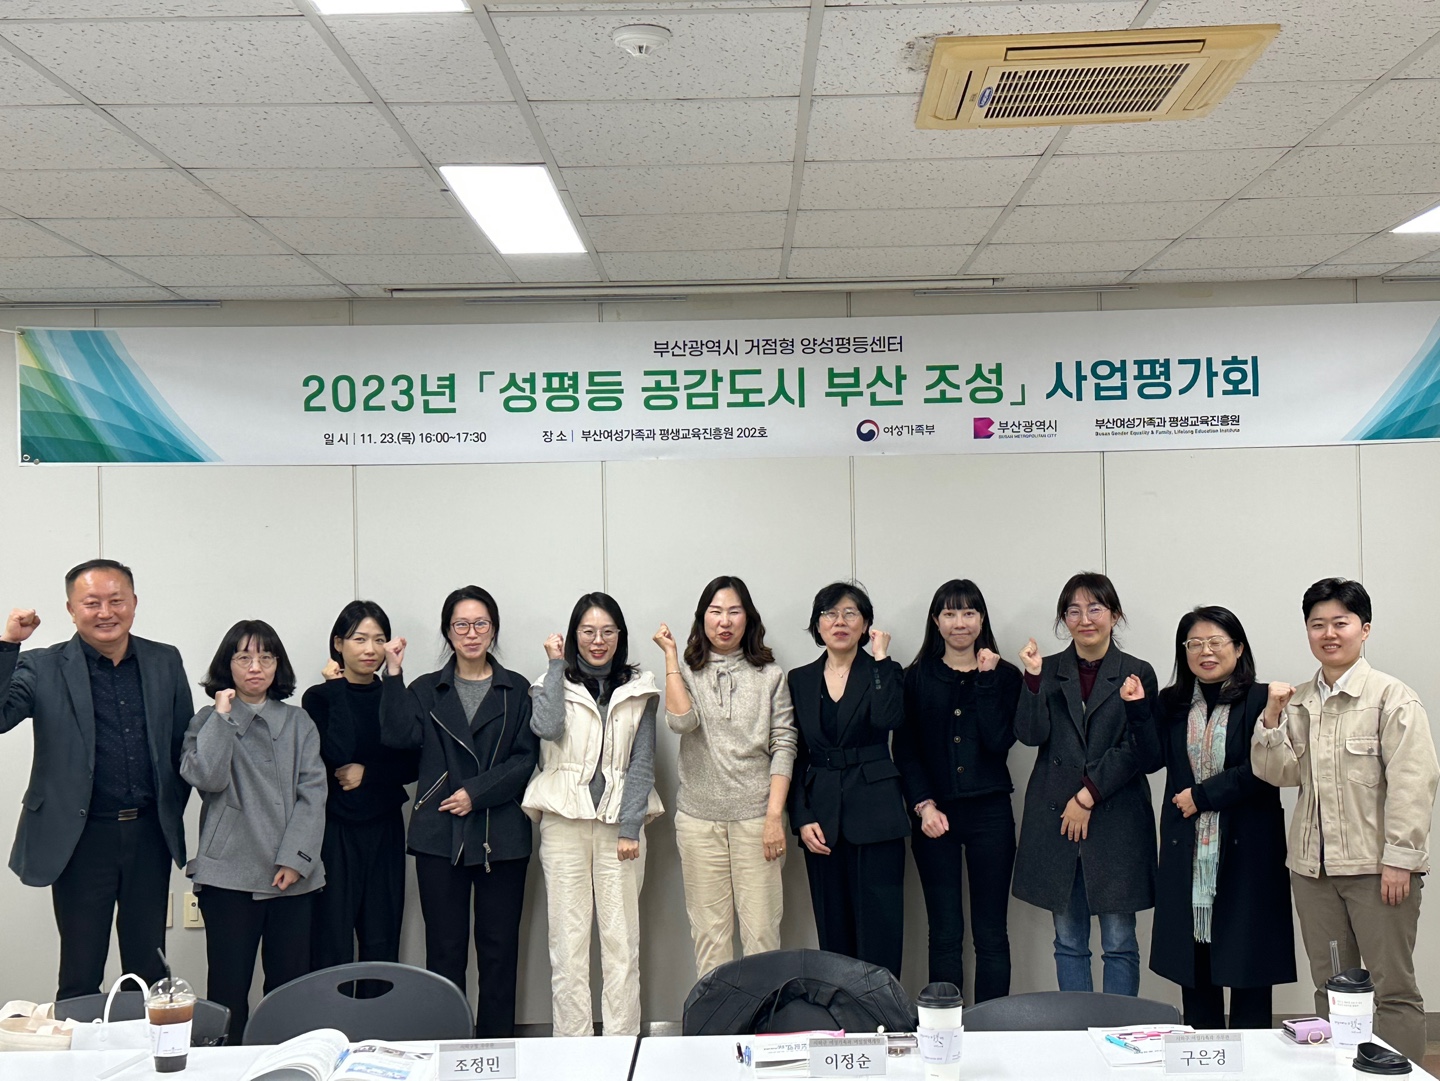 「성평등 공감도시 부산 조성 사업」 사업평가회 개최(11.23)